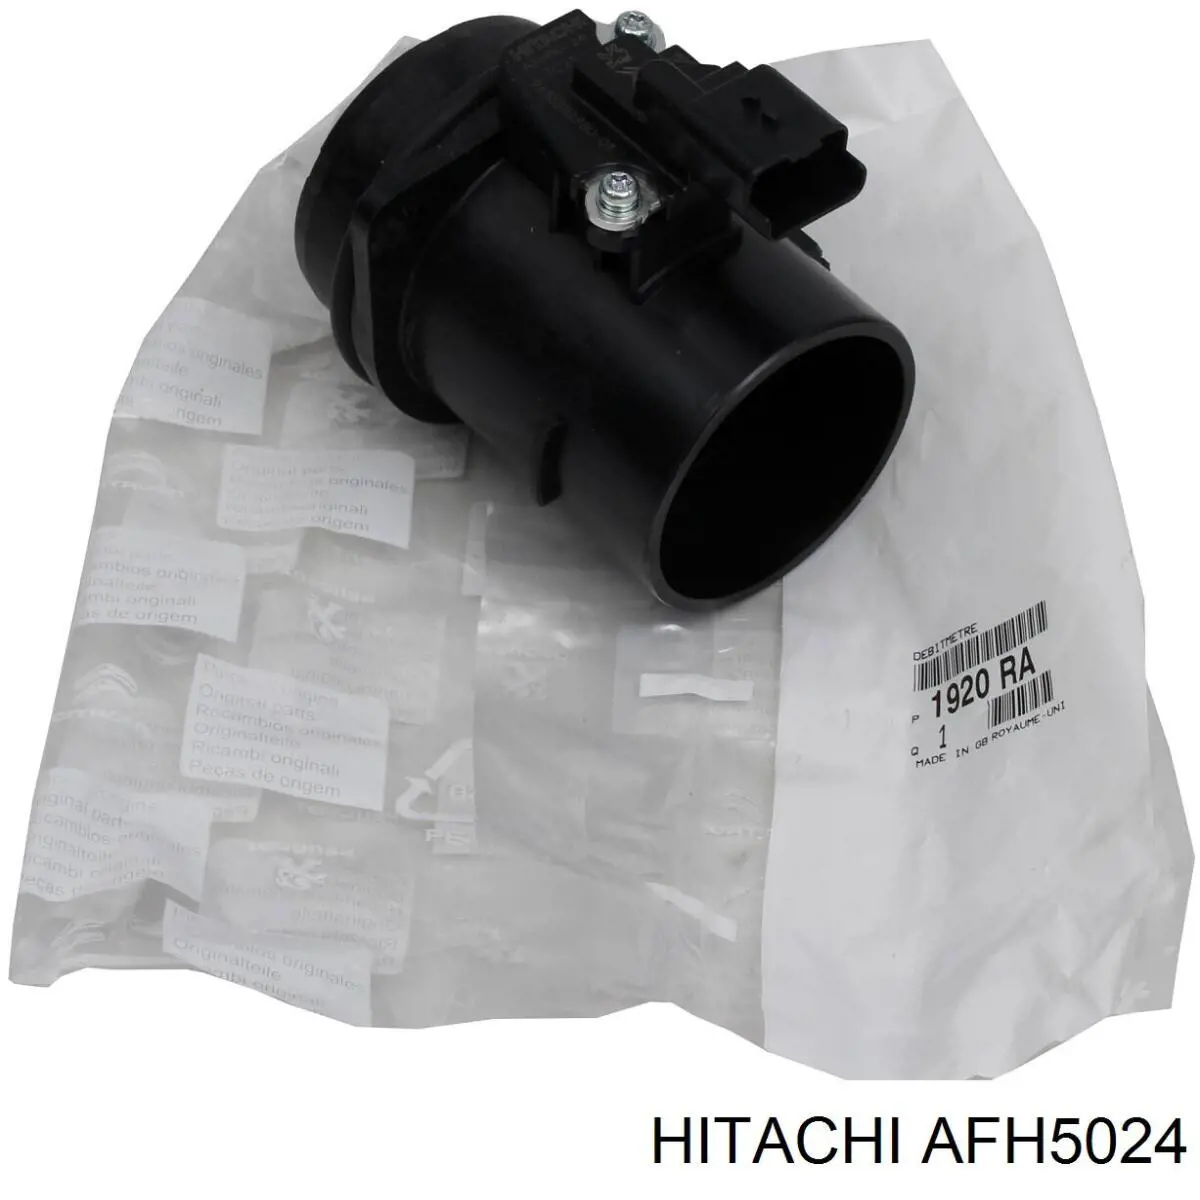 AFH5024 Hitachi caudalímetro